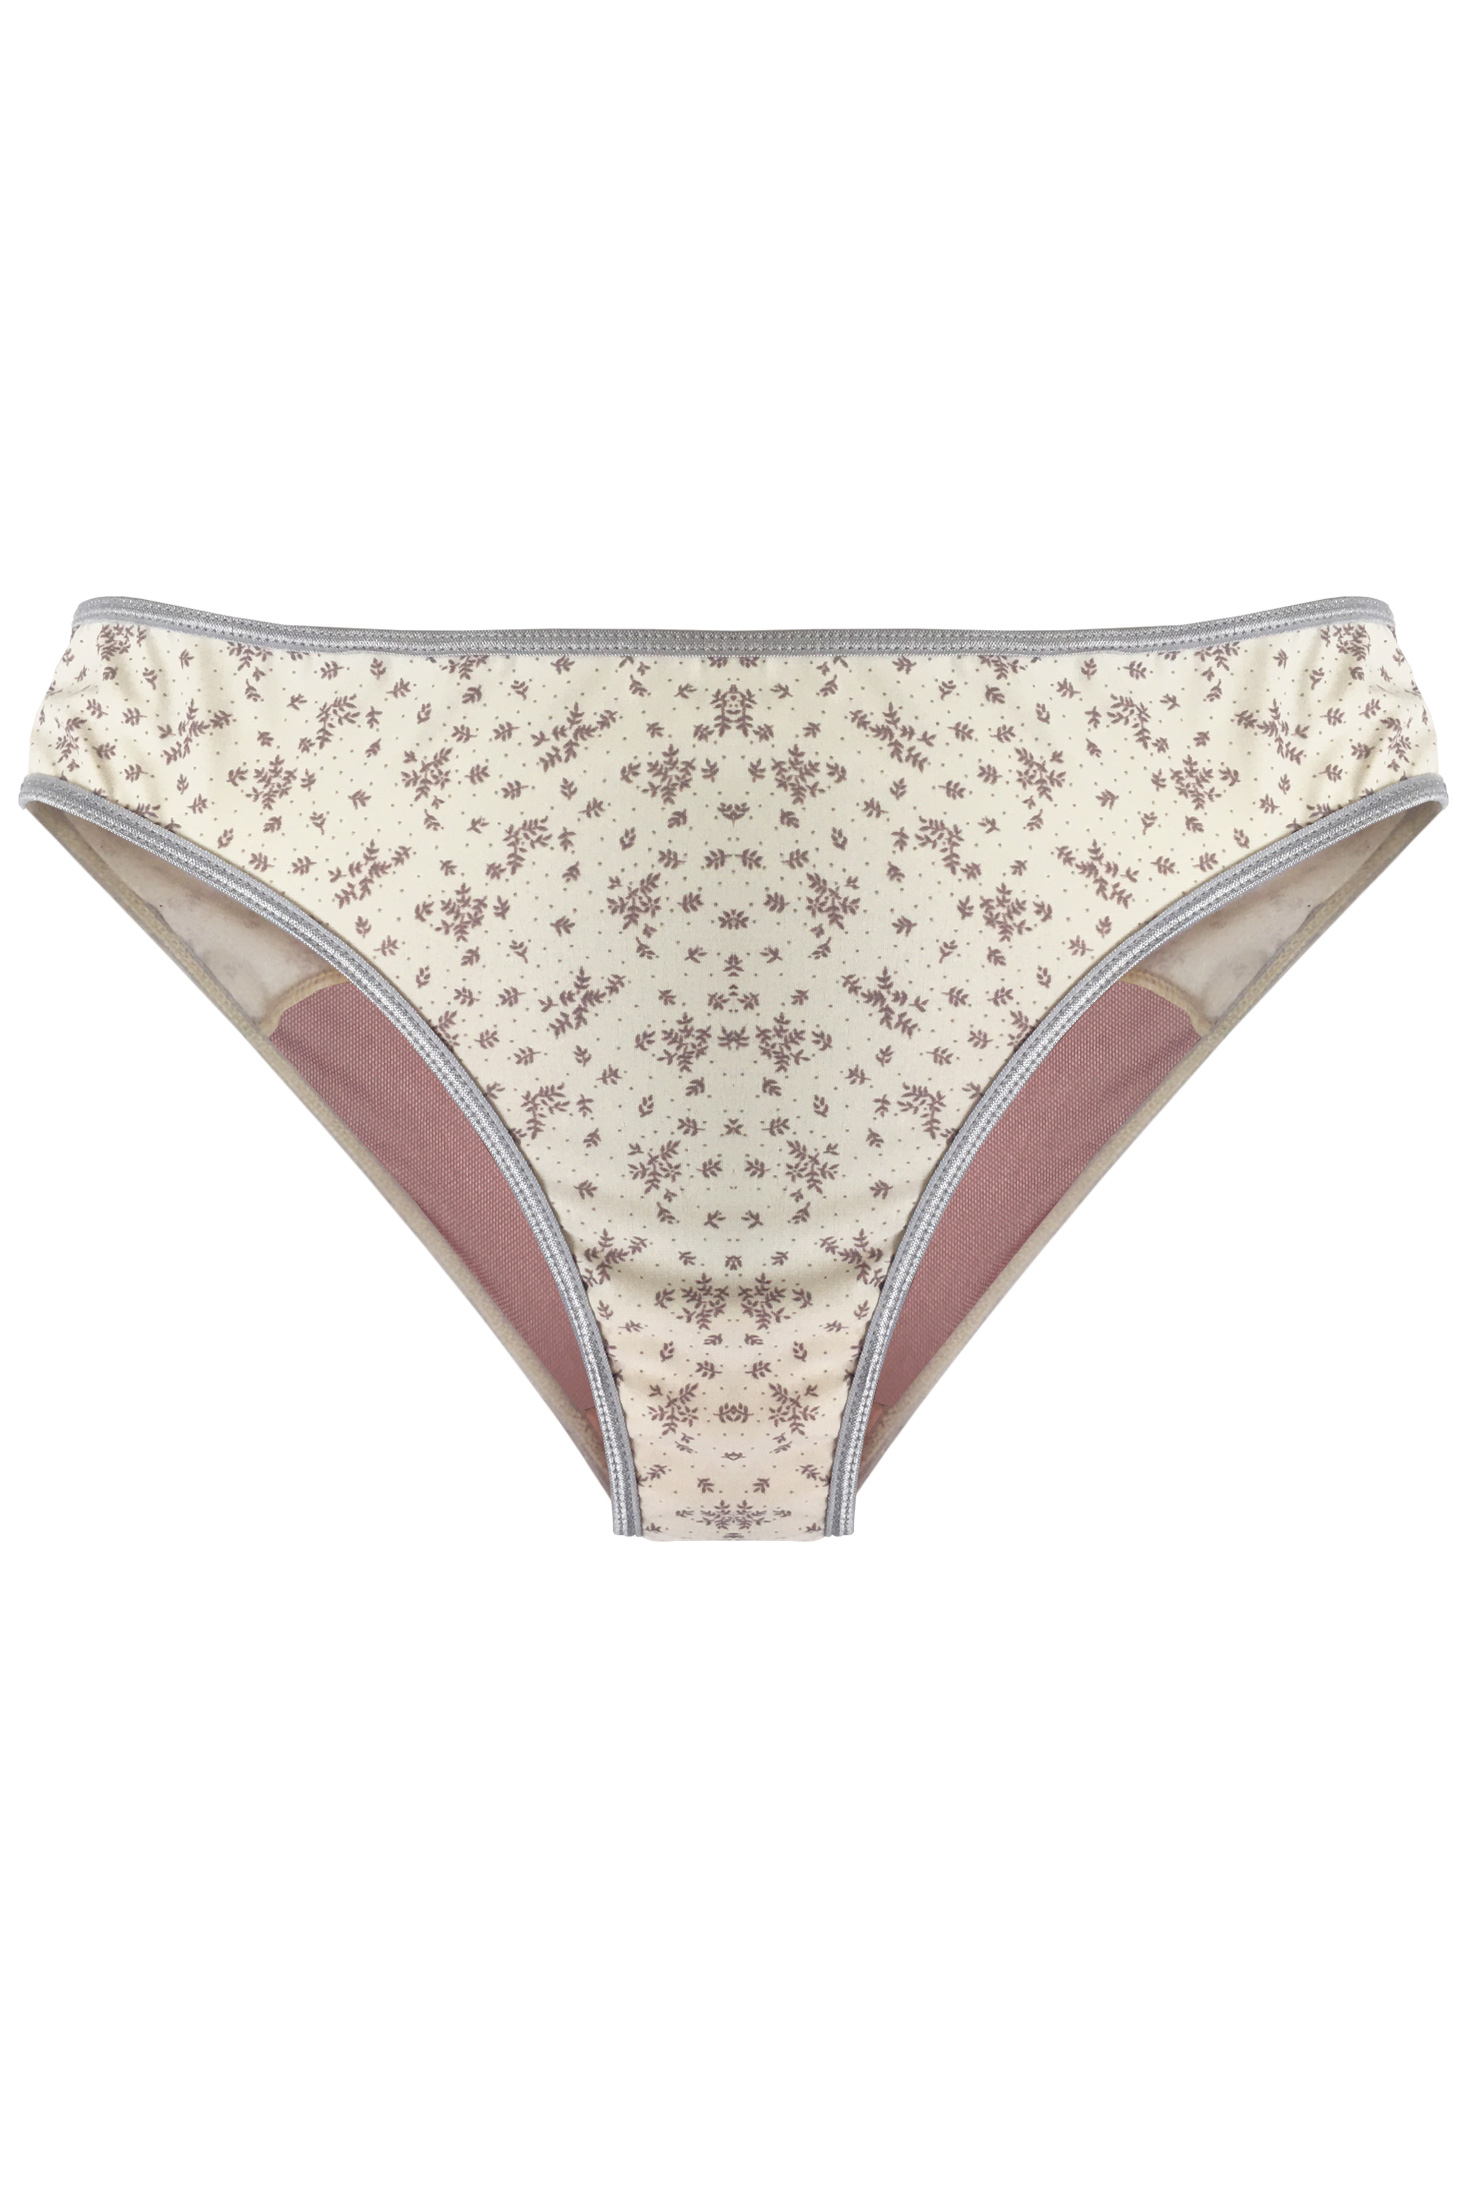 Lingerie Letters Romantic Brief - Women's Underwear Online